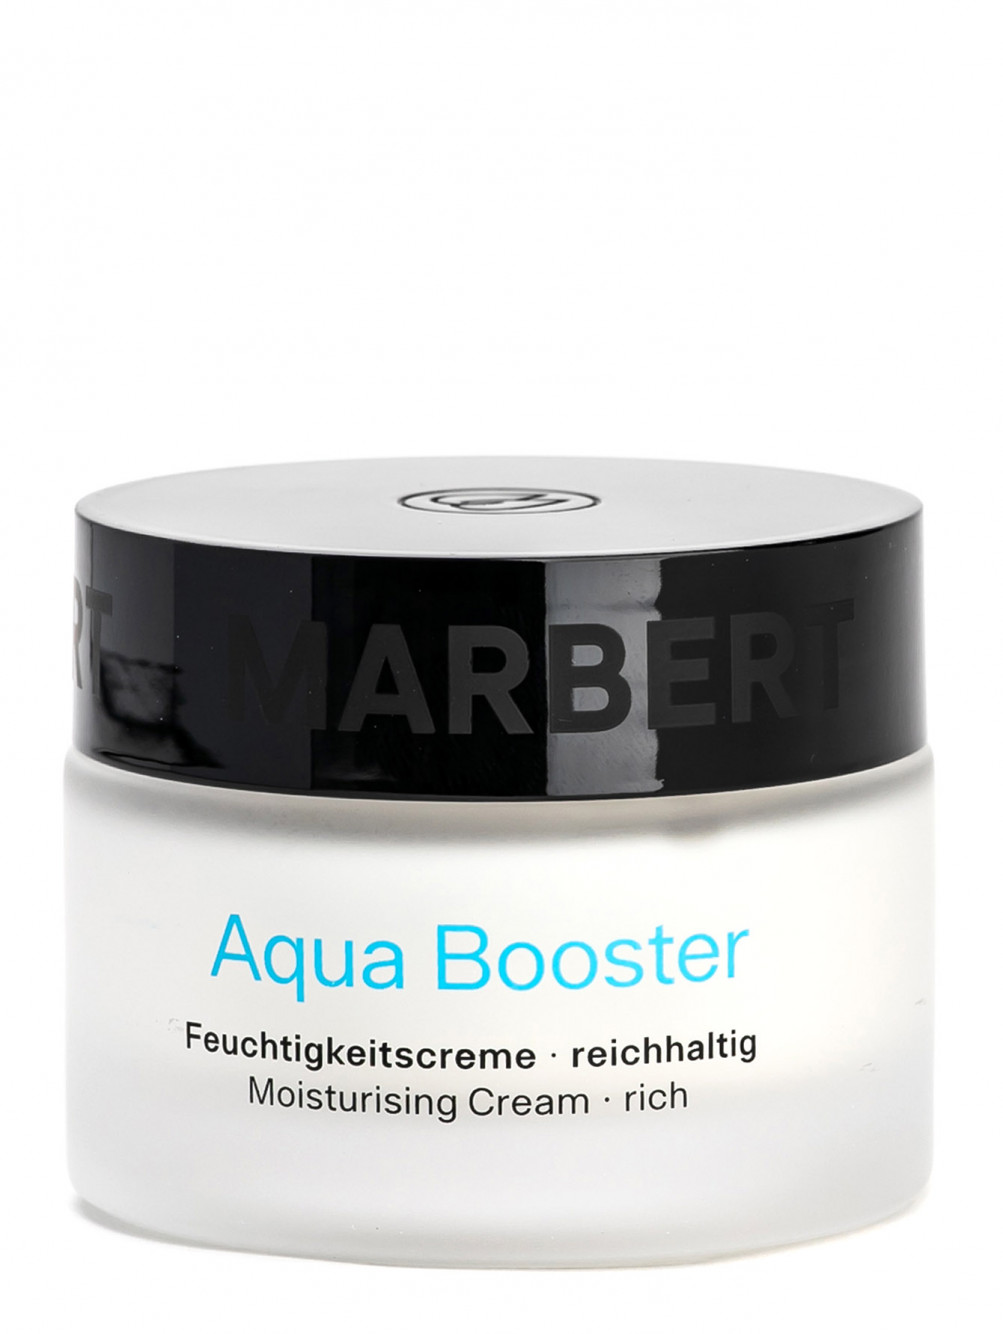 Интенсивный увлажняющий крем для сухой кожи Aqua Booster Moisturising Creame, 50 мл - Общий вид